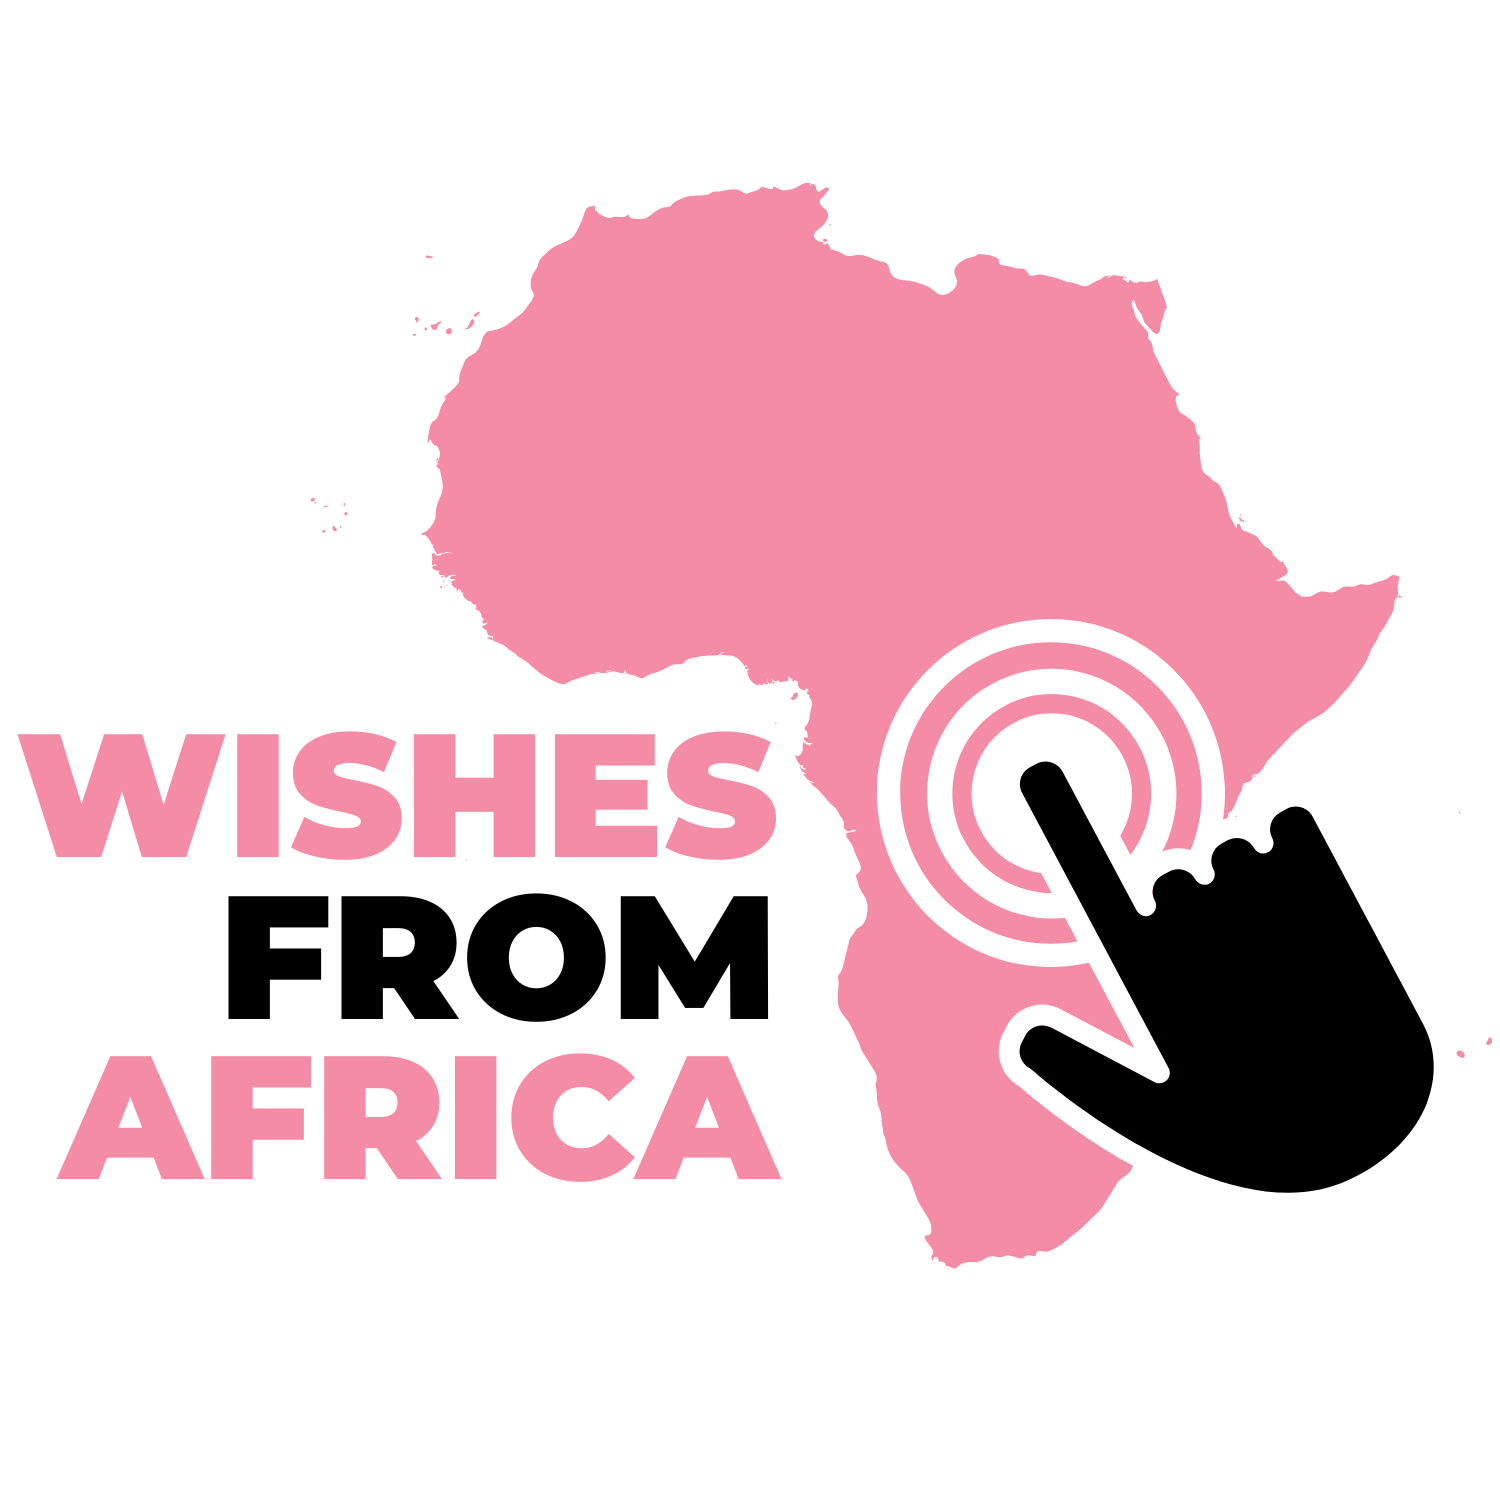 Deze site verkoopt een persoonlijke videoboodschap uit Afrika